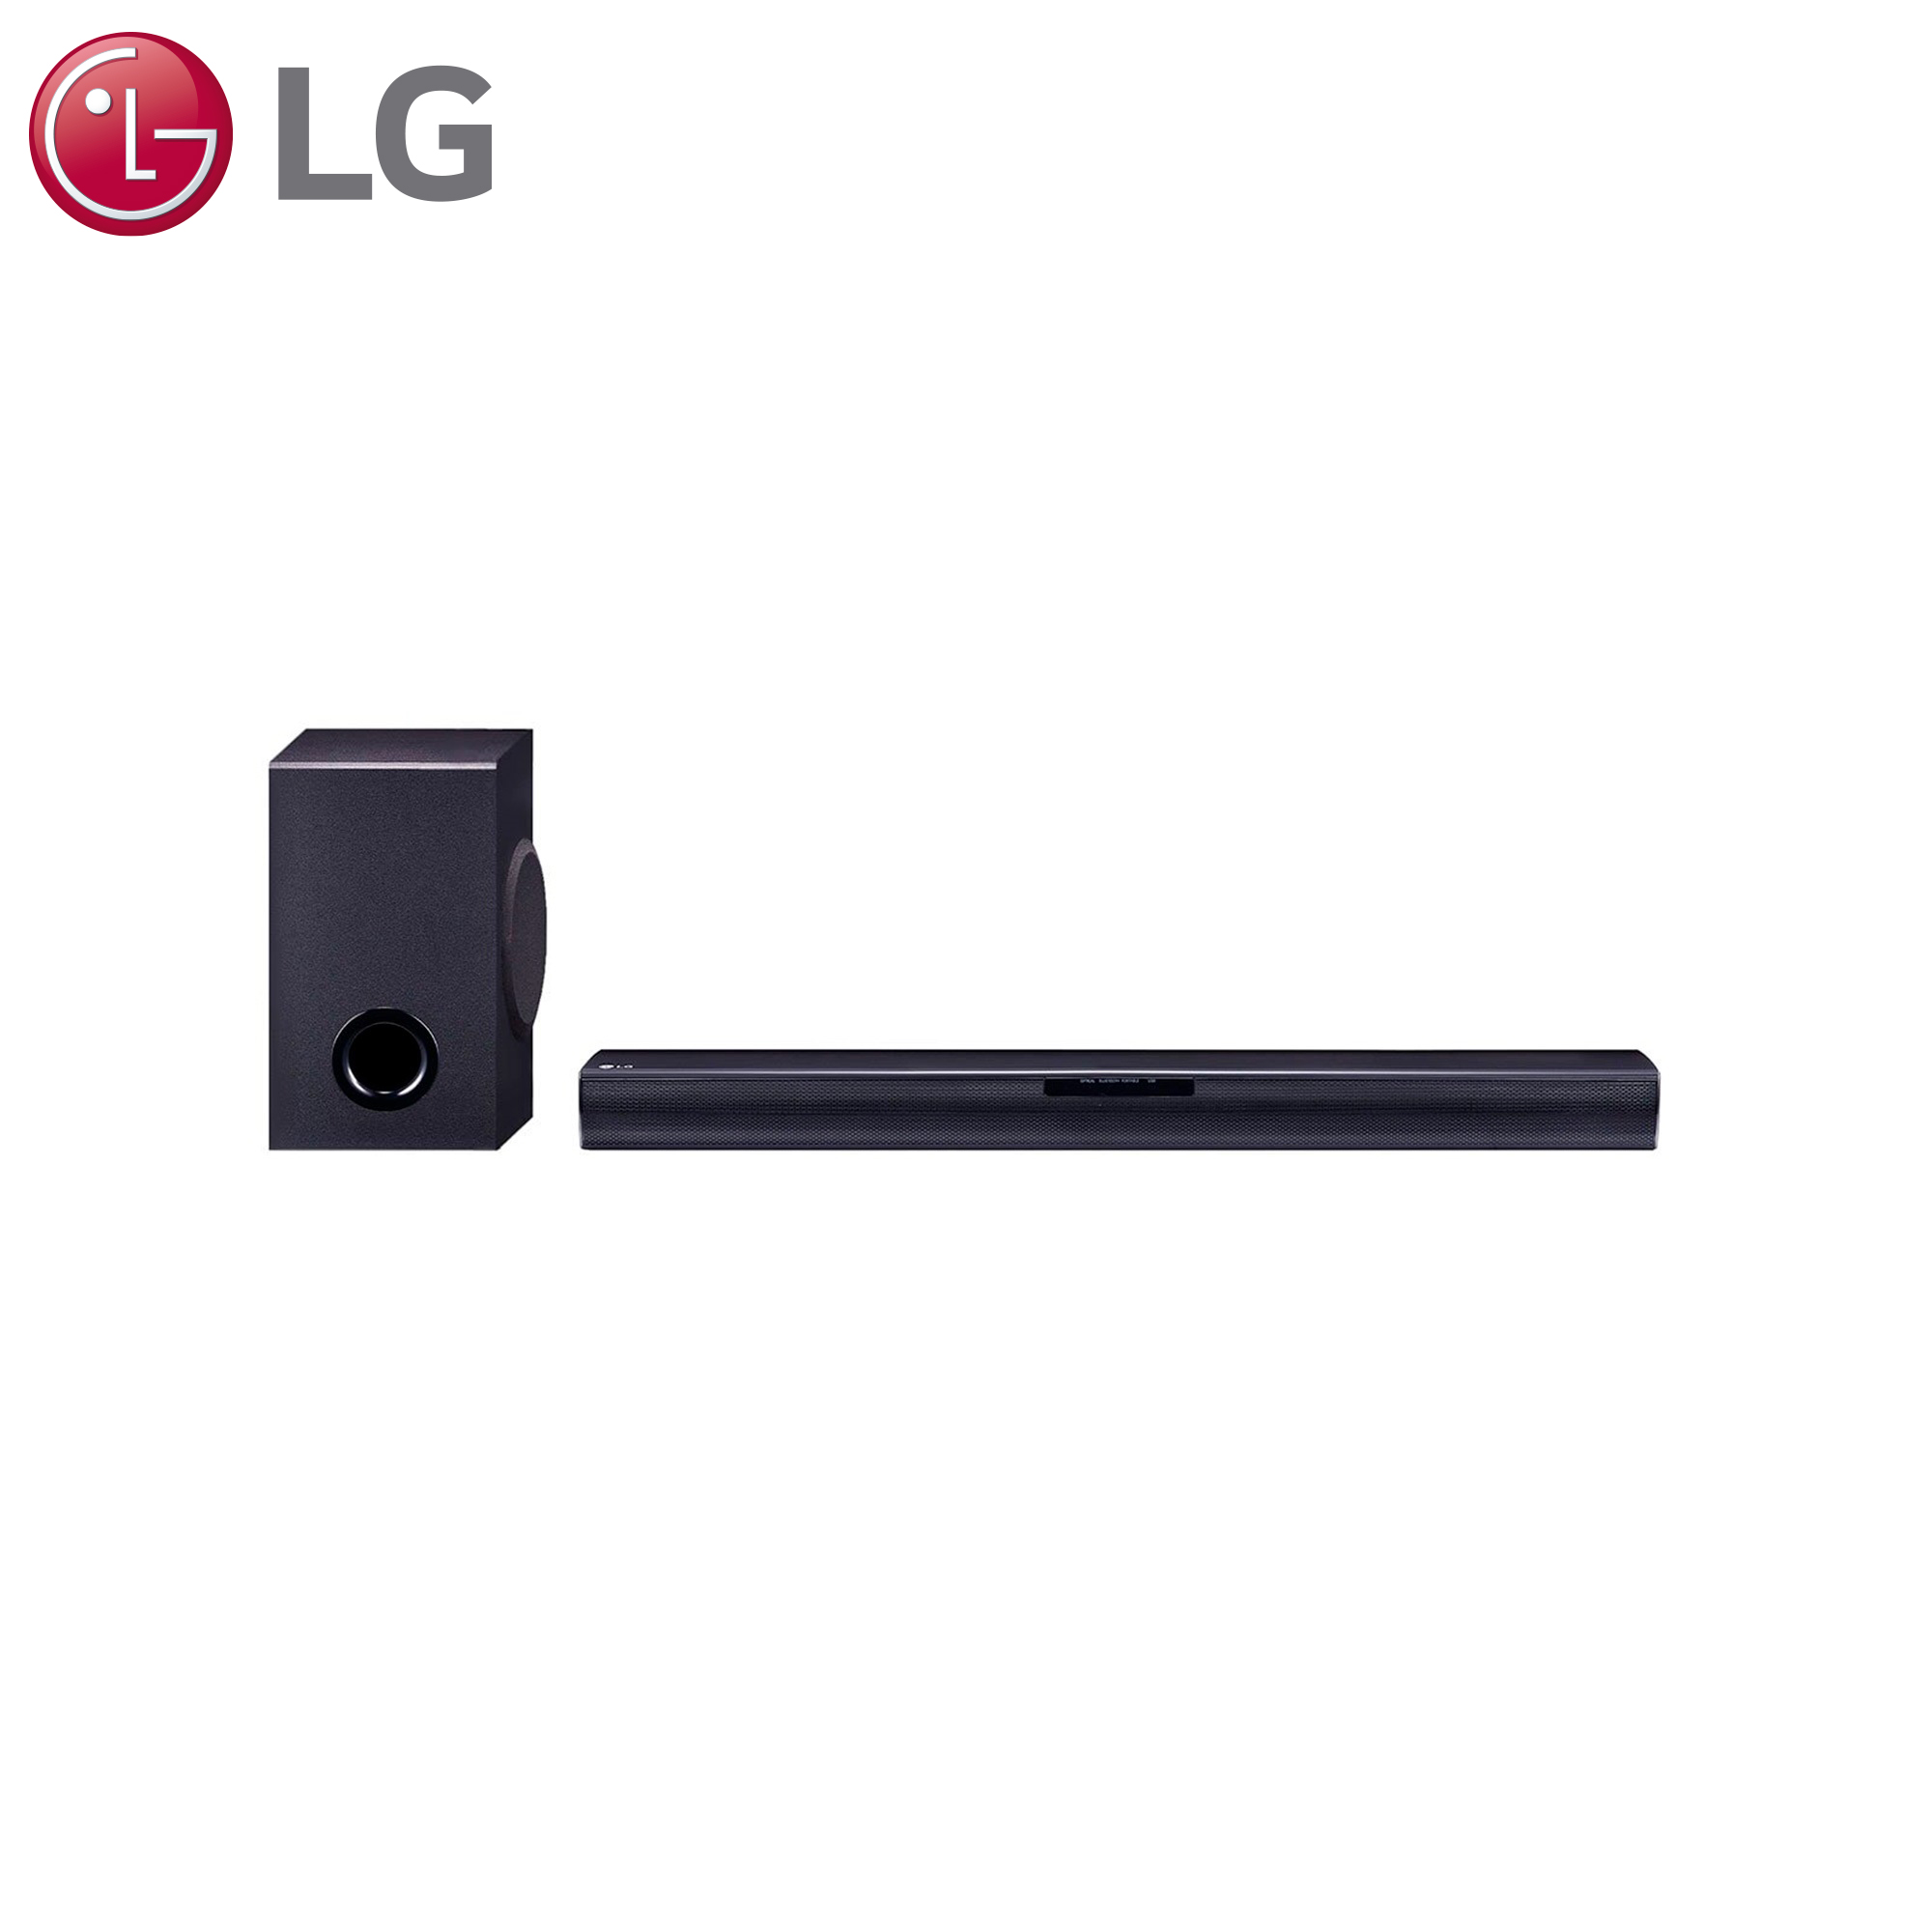 SoundBar LG SQC1 con 160W de potencia y 2.1 canales - SQC1